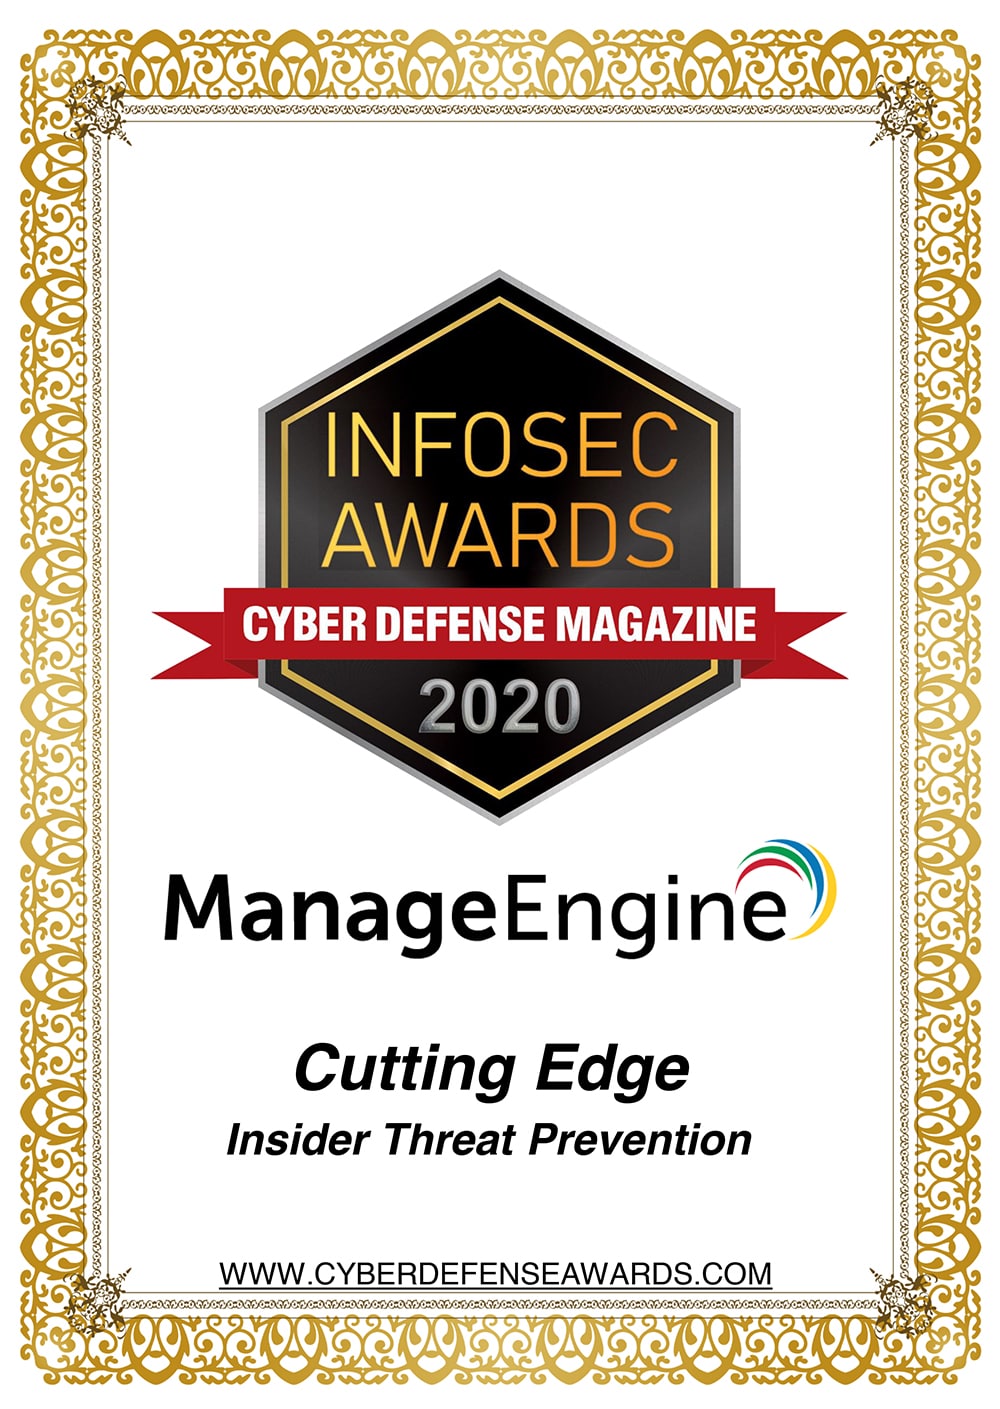 Infosec Awards 2020